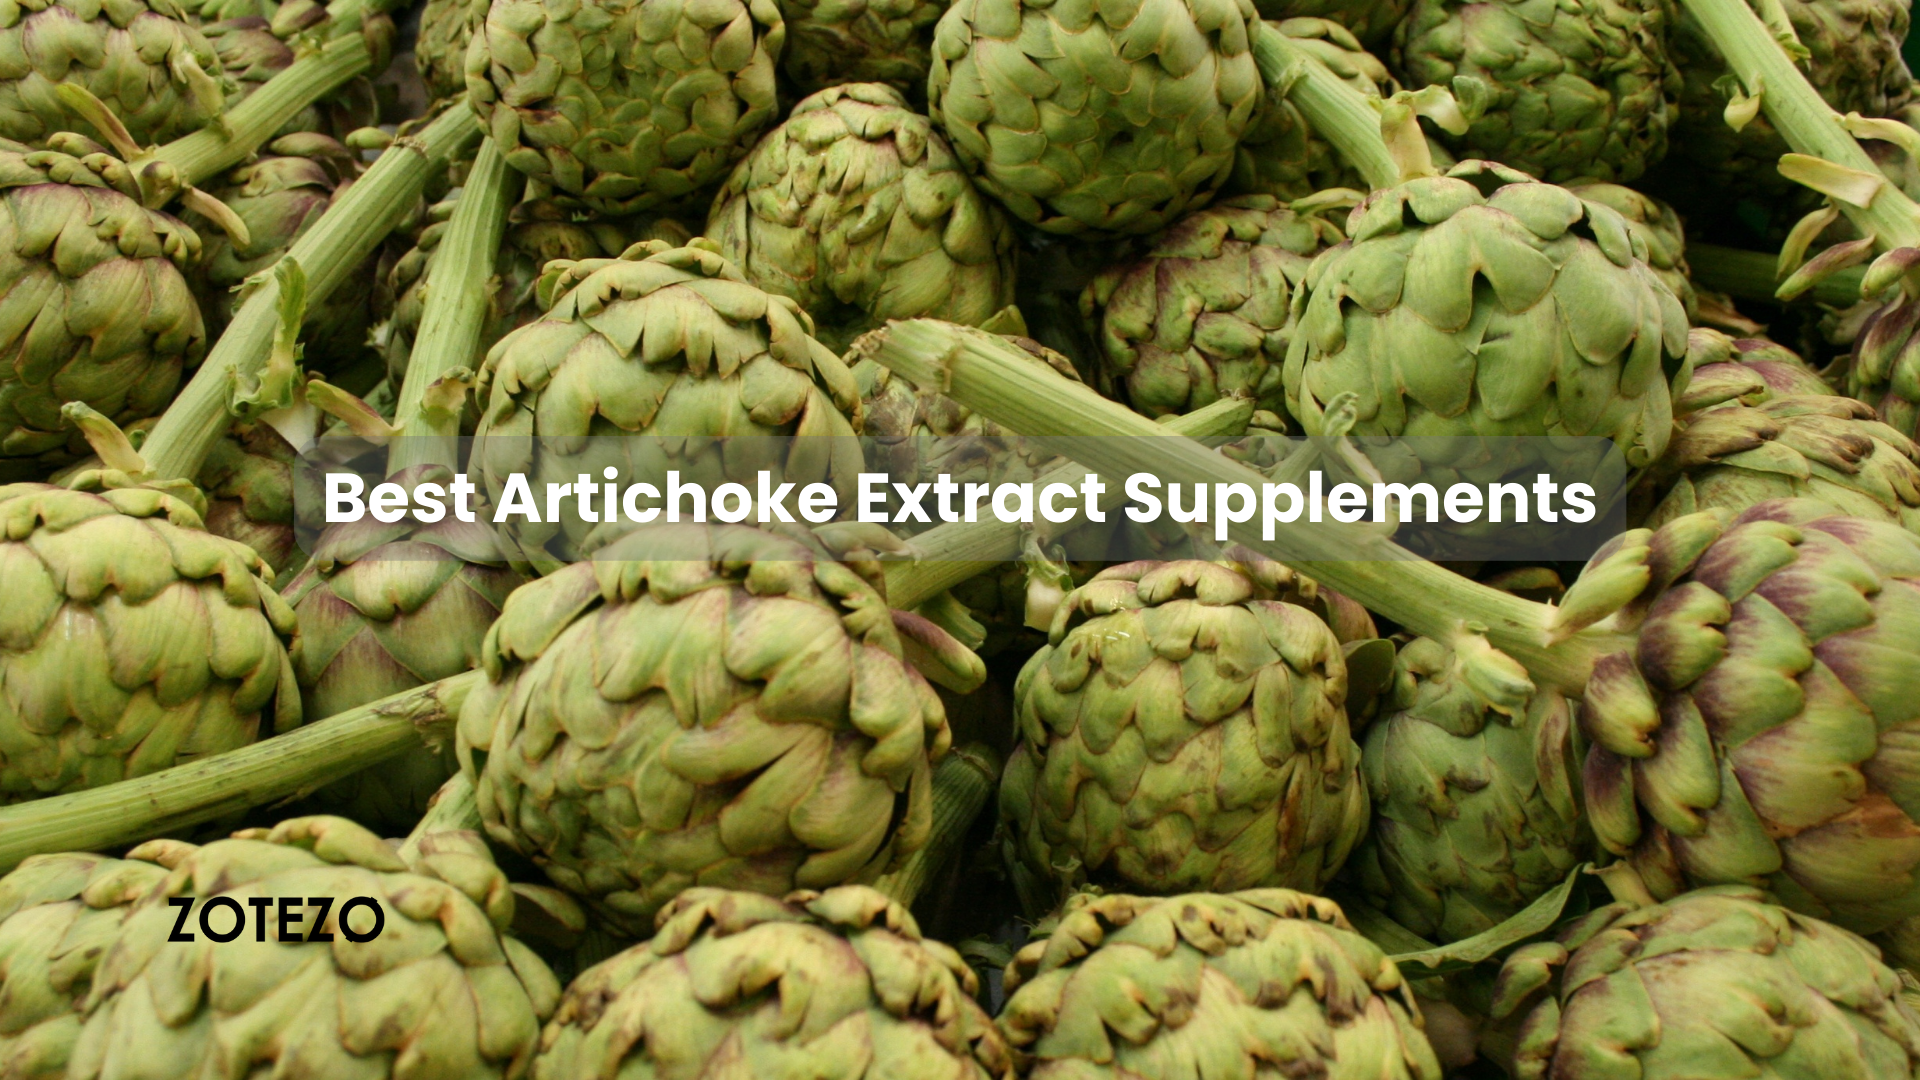 Artichoke Extract Supplements in Japan